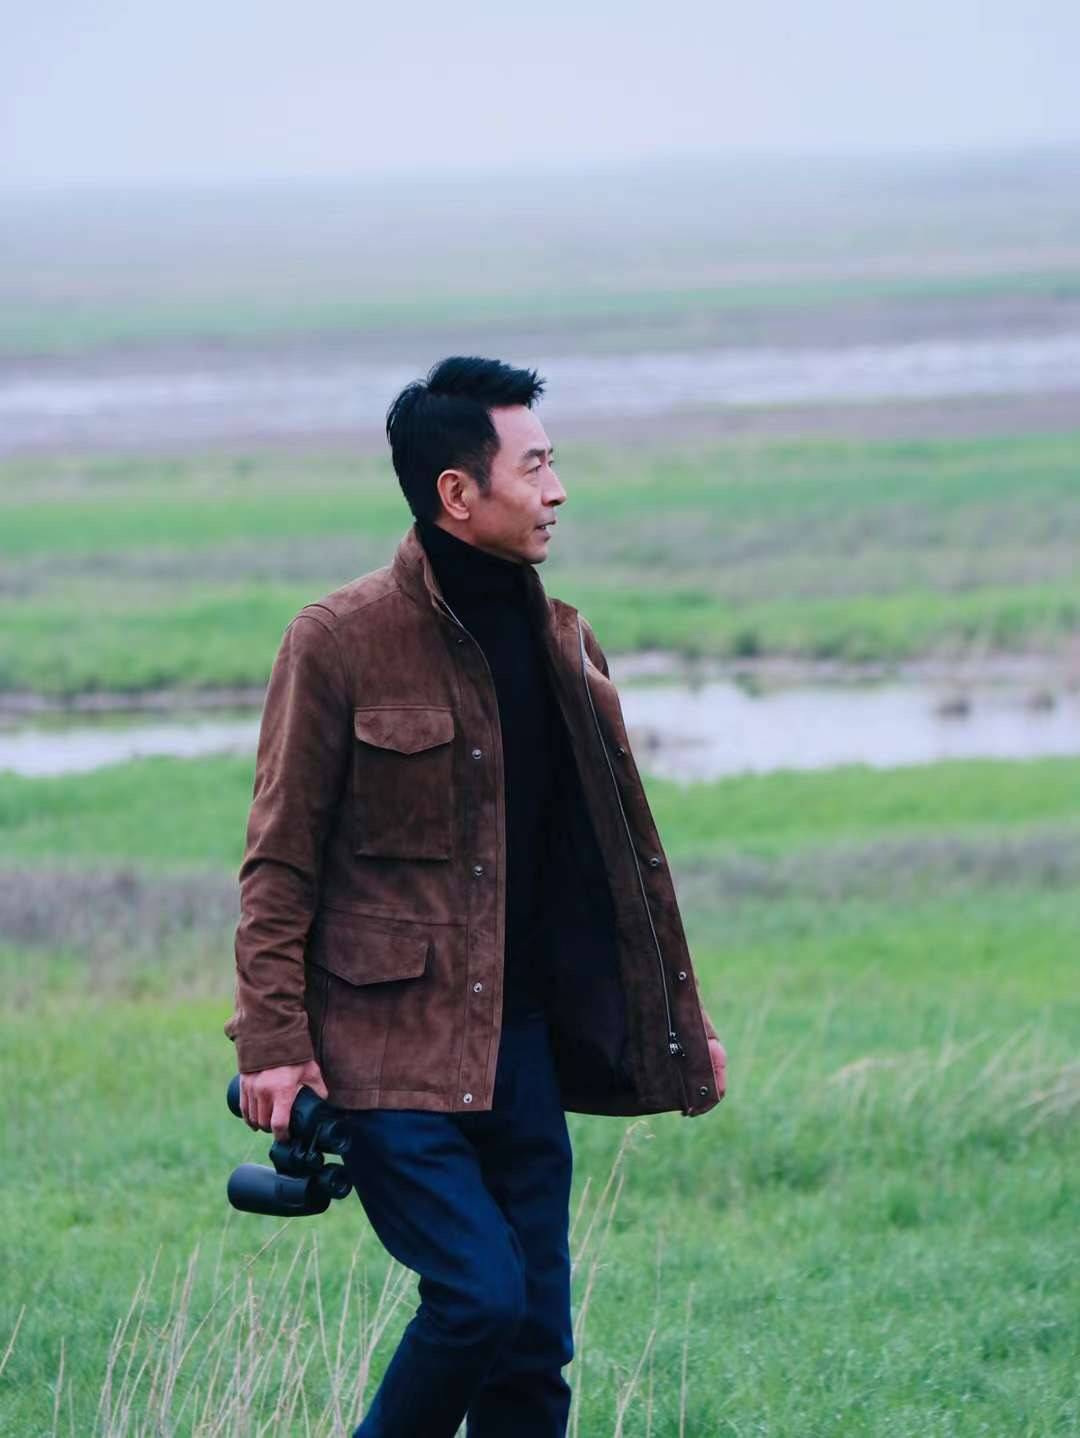 《国民大叔》郭晓峰写真系列之三:草原上的远行者